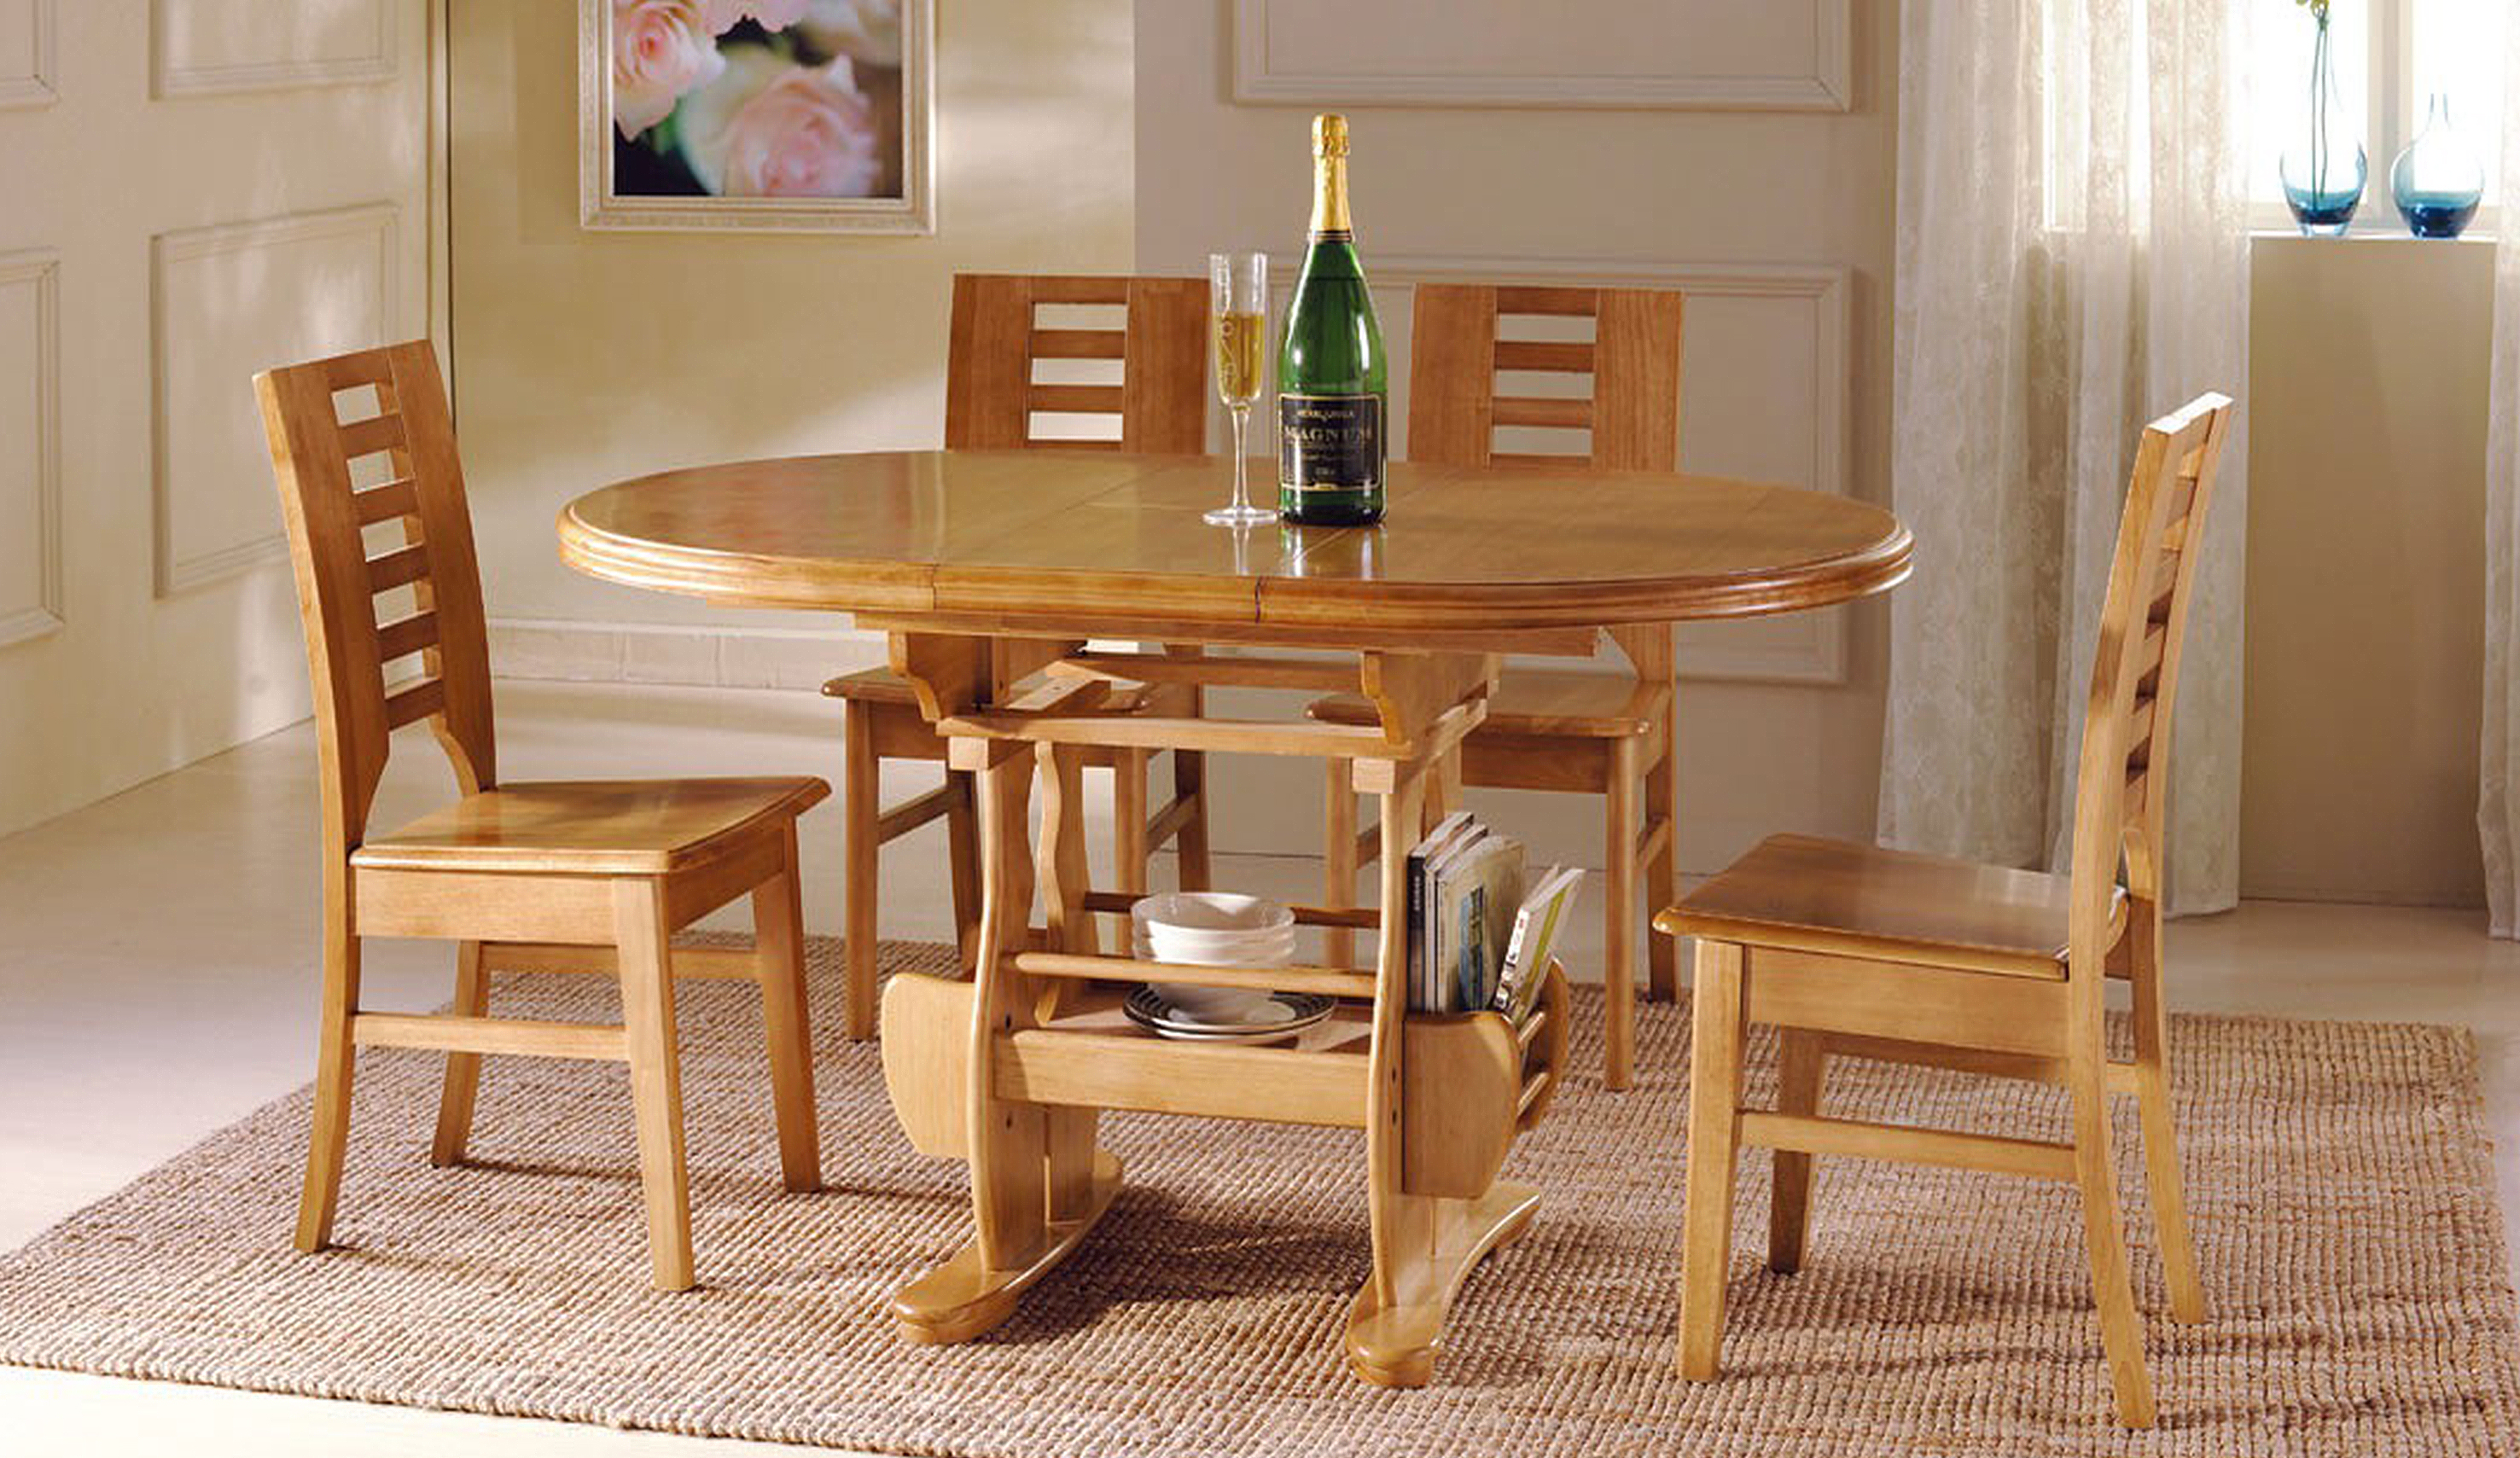 Картинки кухонного стола. Стол кухонный. Кухонный стол и стулья. Стол кухонный деревянный. Деревянный стол со стульями.